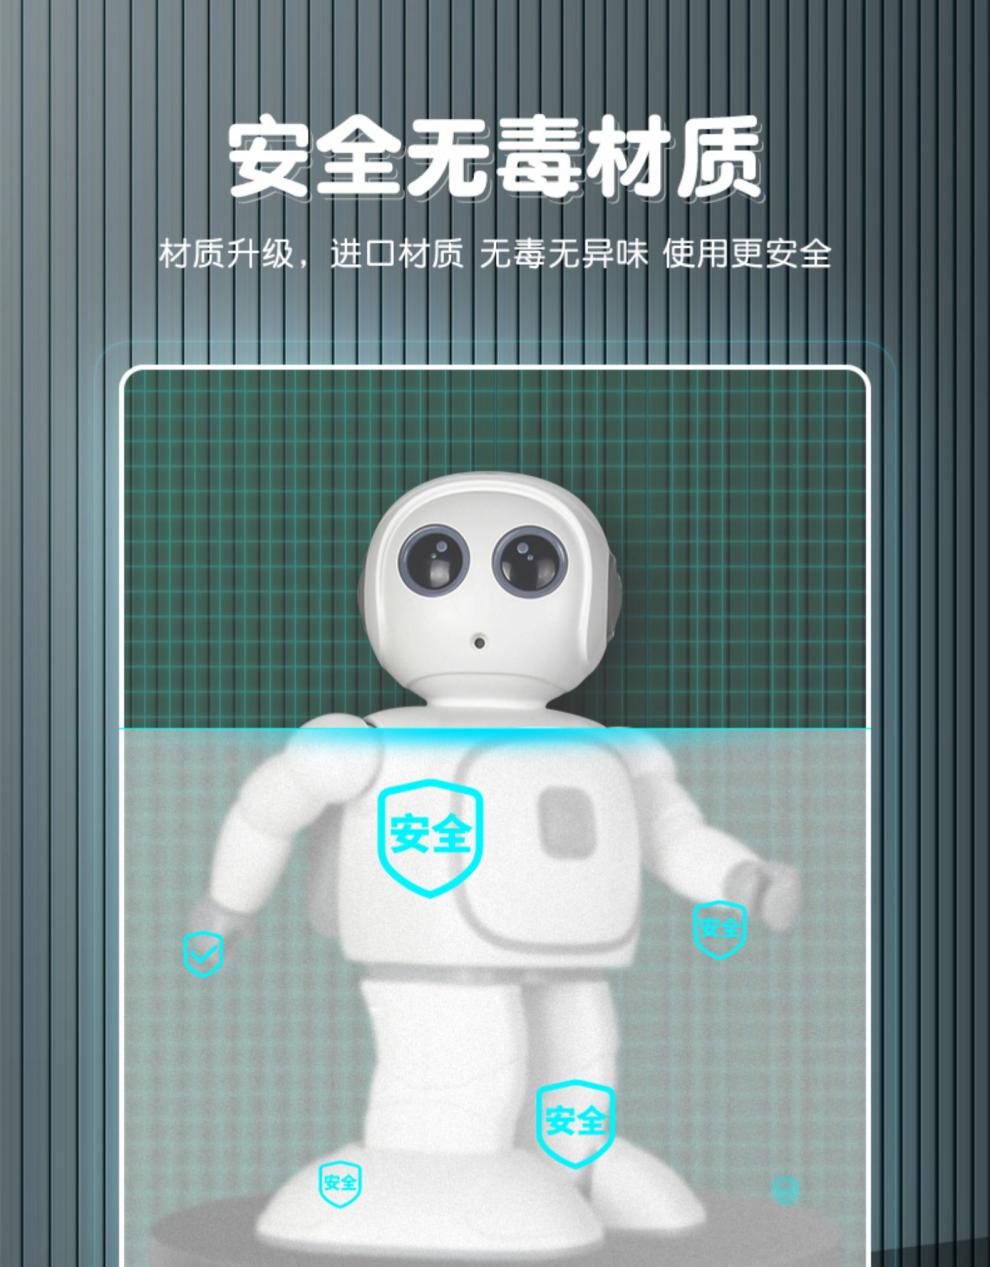 r8-智能机器人【图片 价格 品牌 报价】